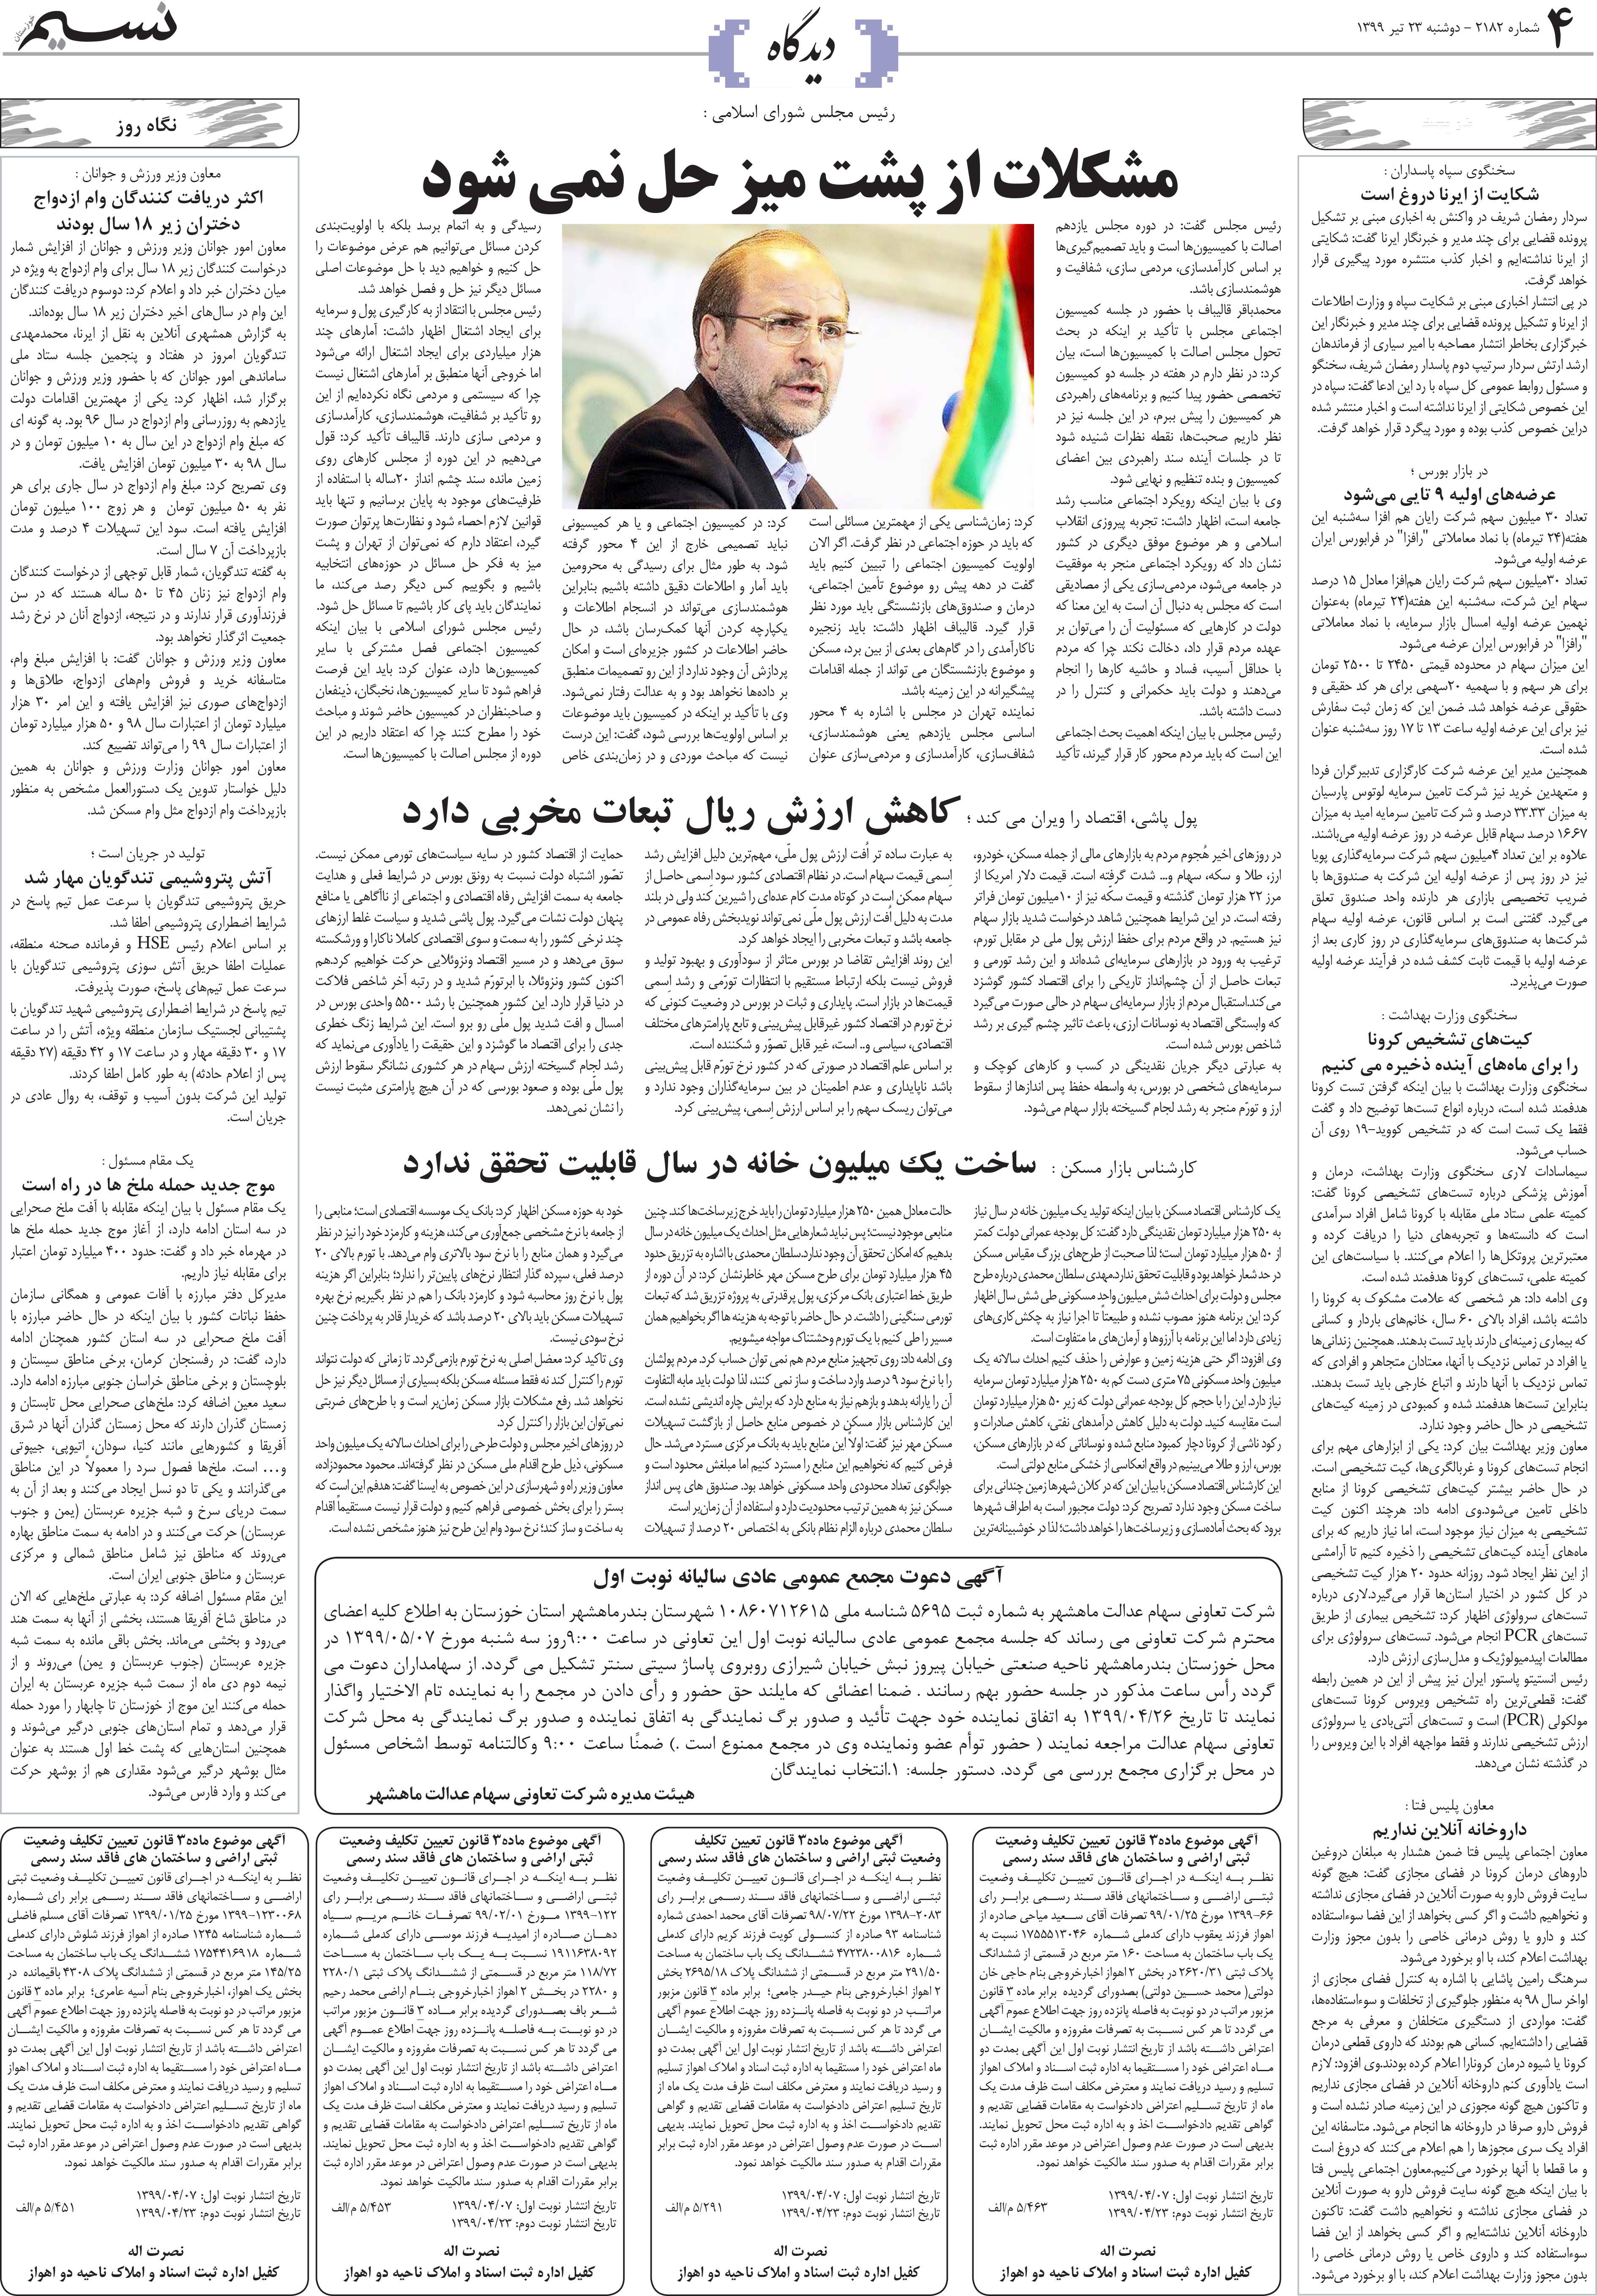 صفحه دیدگاه روزنامه نسیم شماره 2182